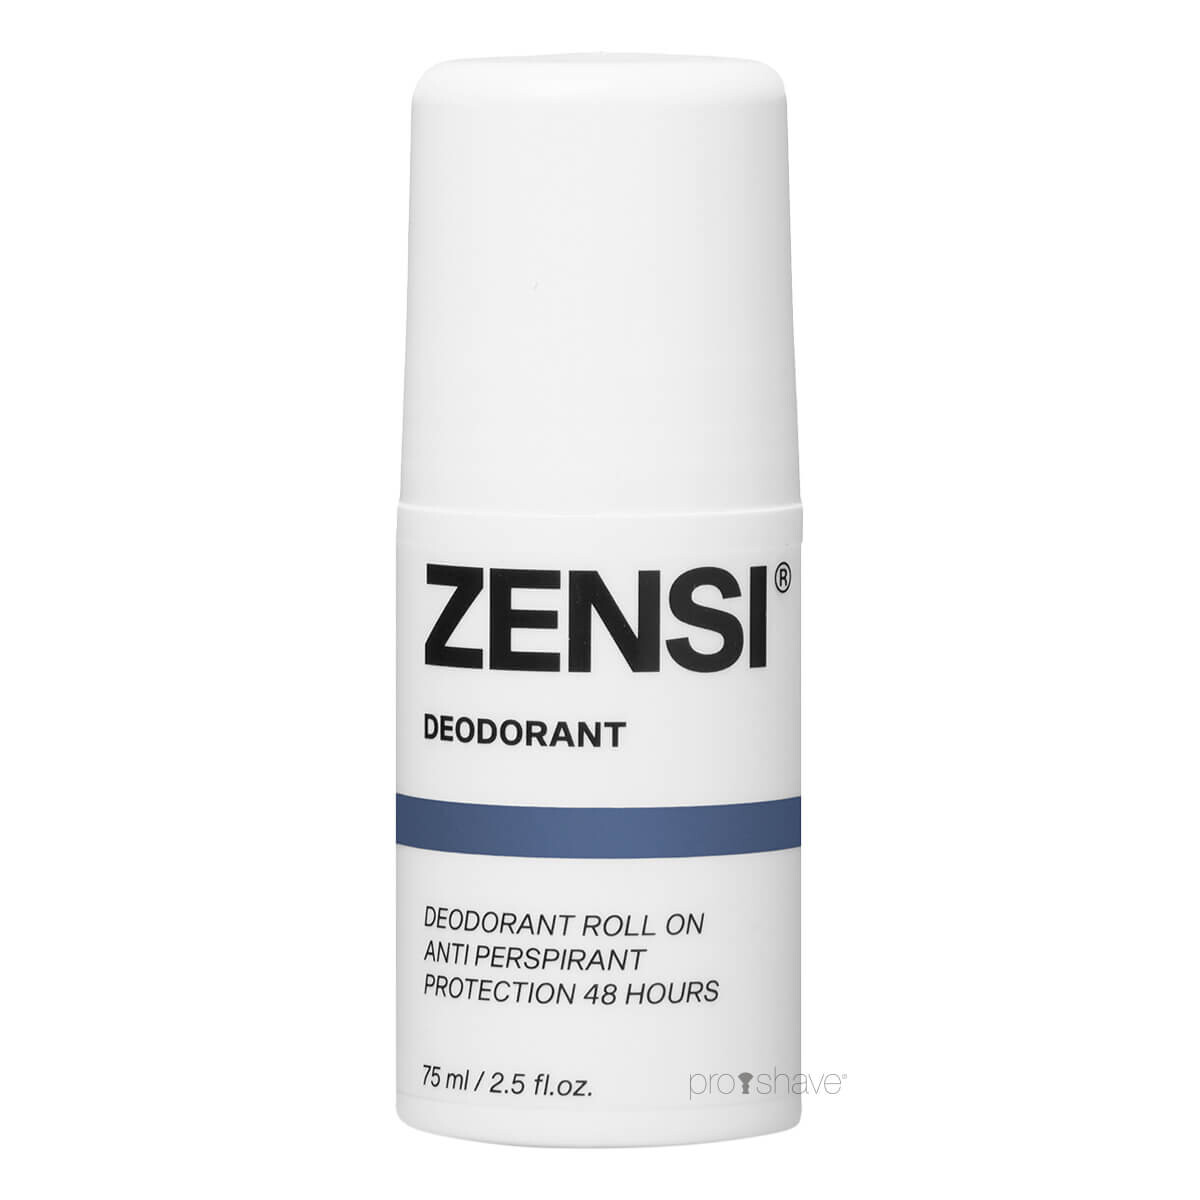 Billede af ZENSI Deodorant, 75 ml. hos Proshave